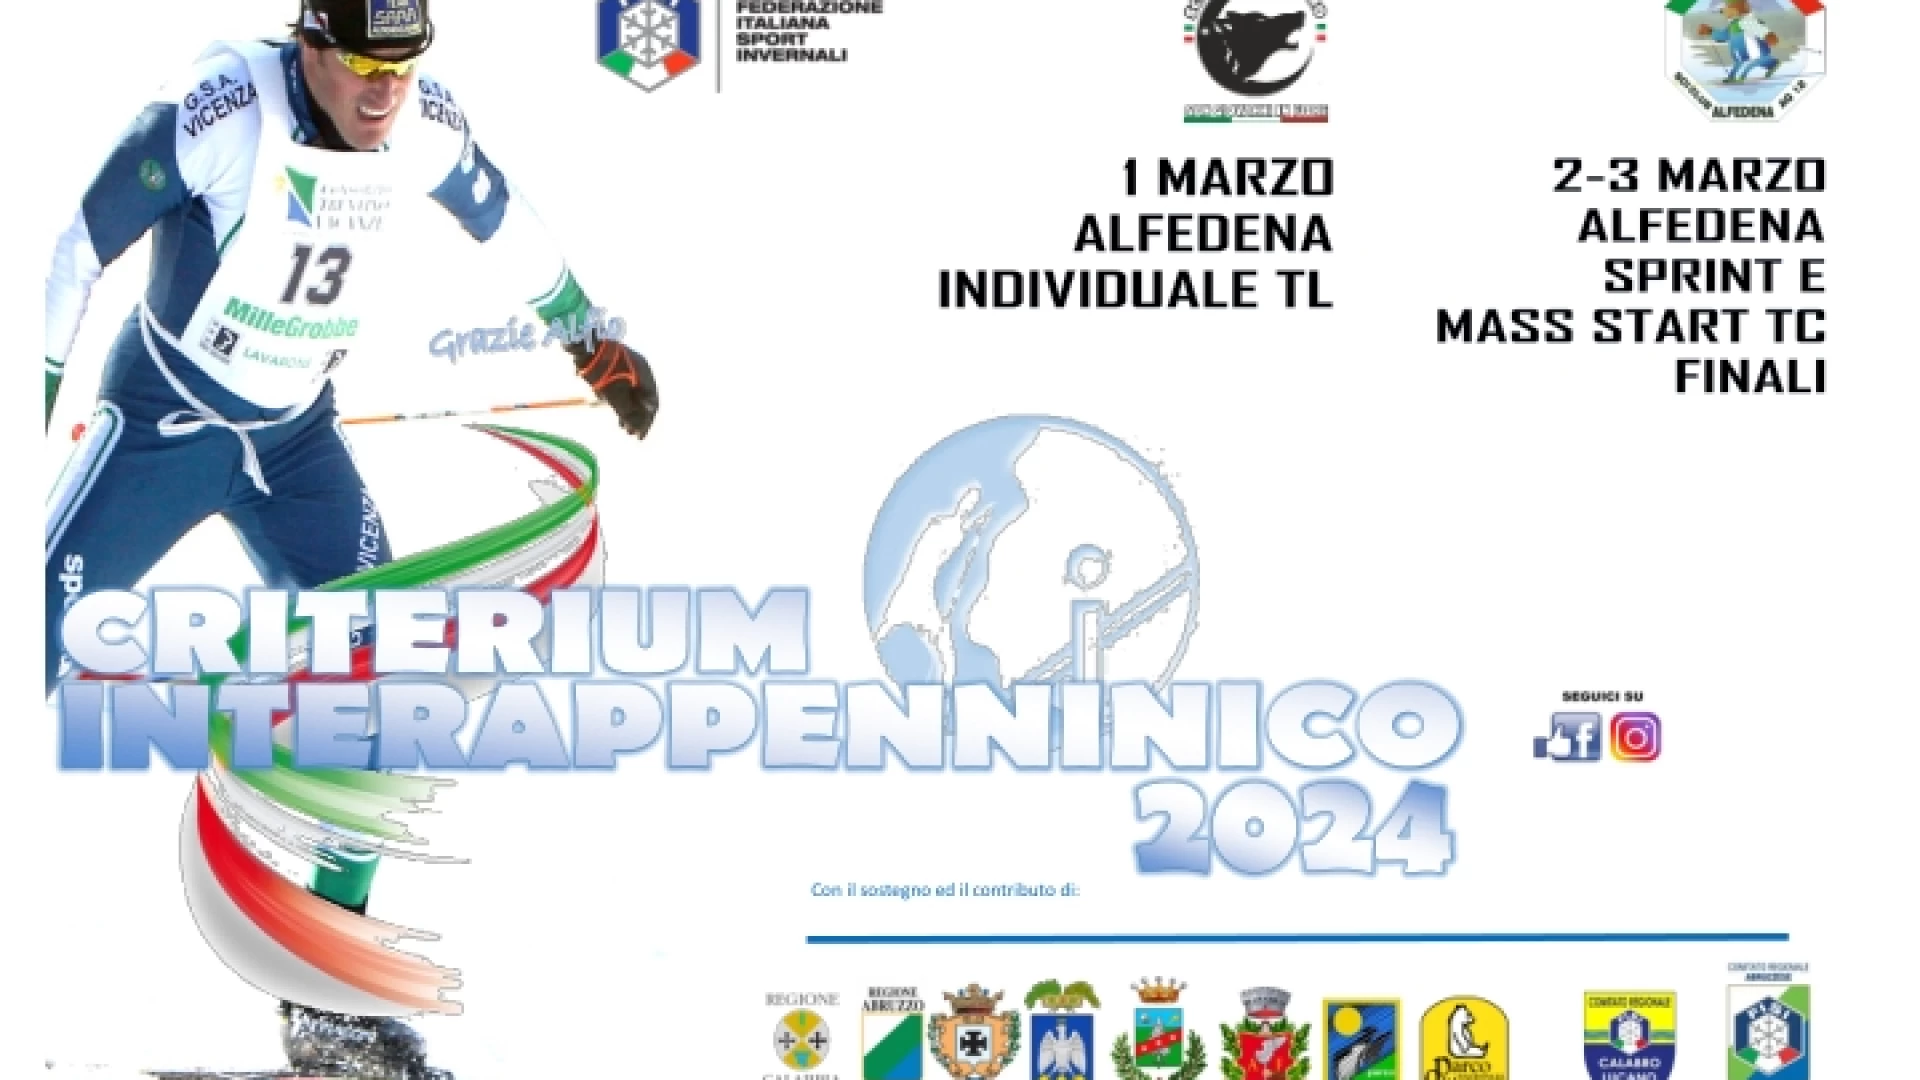 Alfedena, lo Sci Club si aggiudica le Fasi Finali del Trofeo Interappenninico Nuova e prestigiosa impresa per la presidenza di Arturo Como